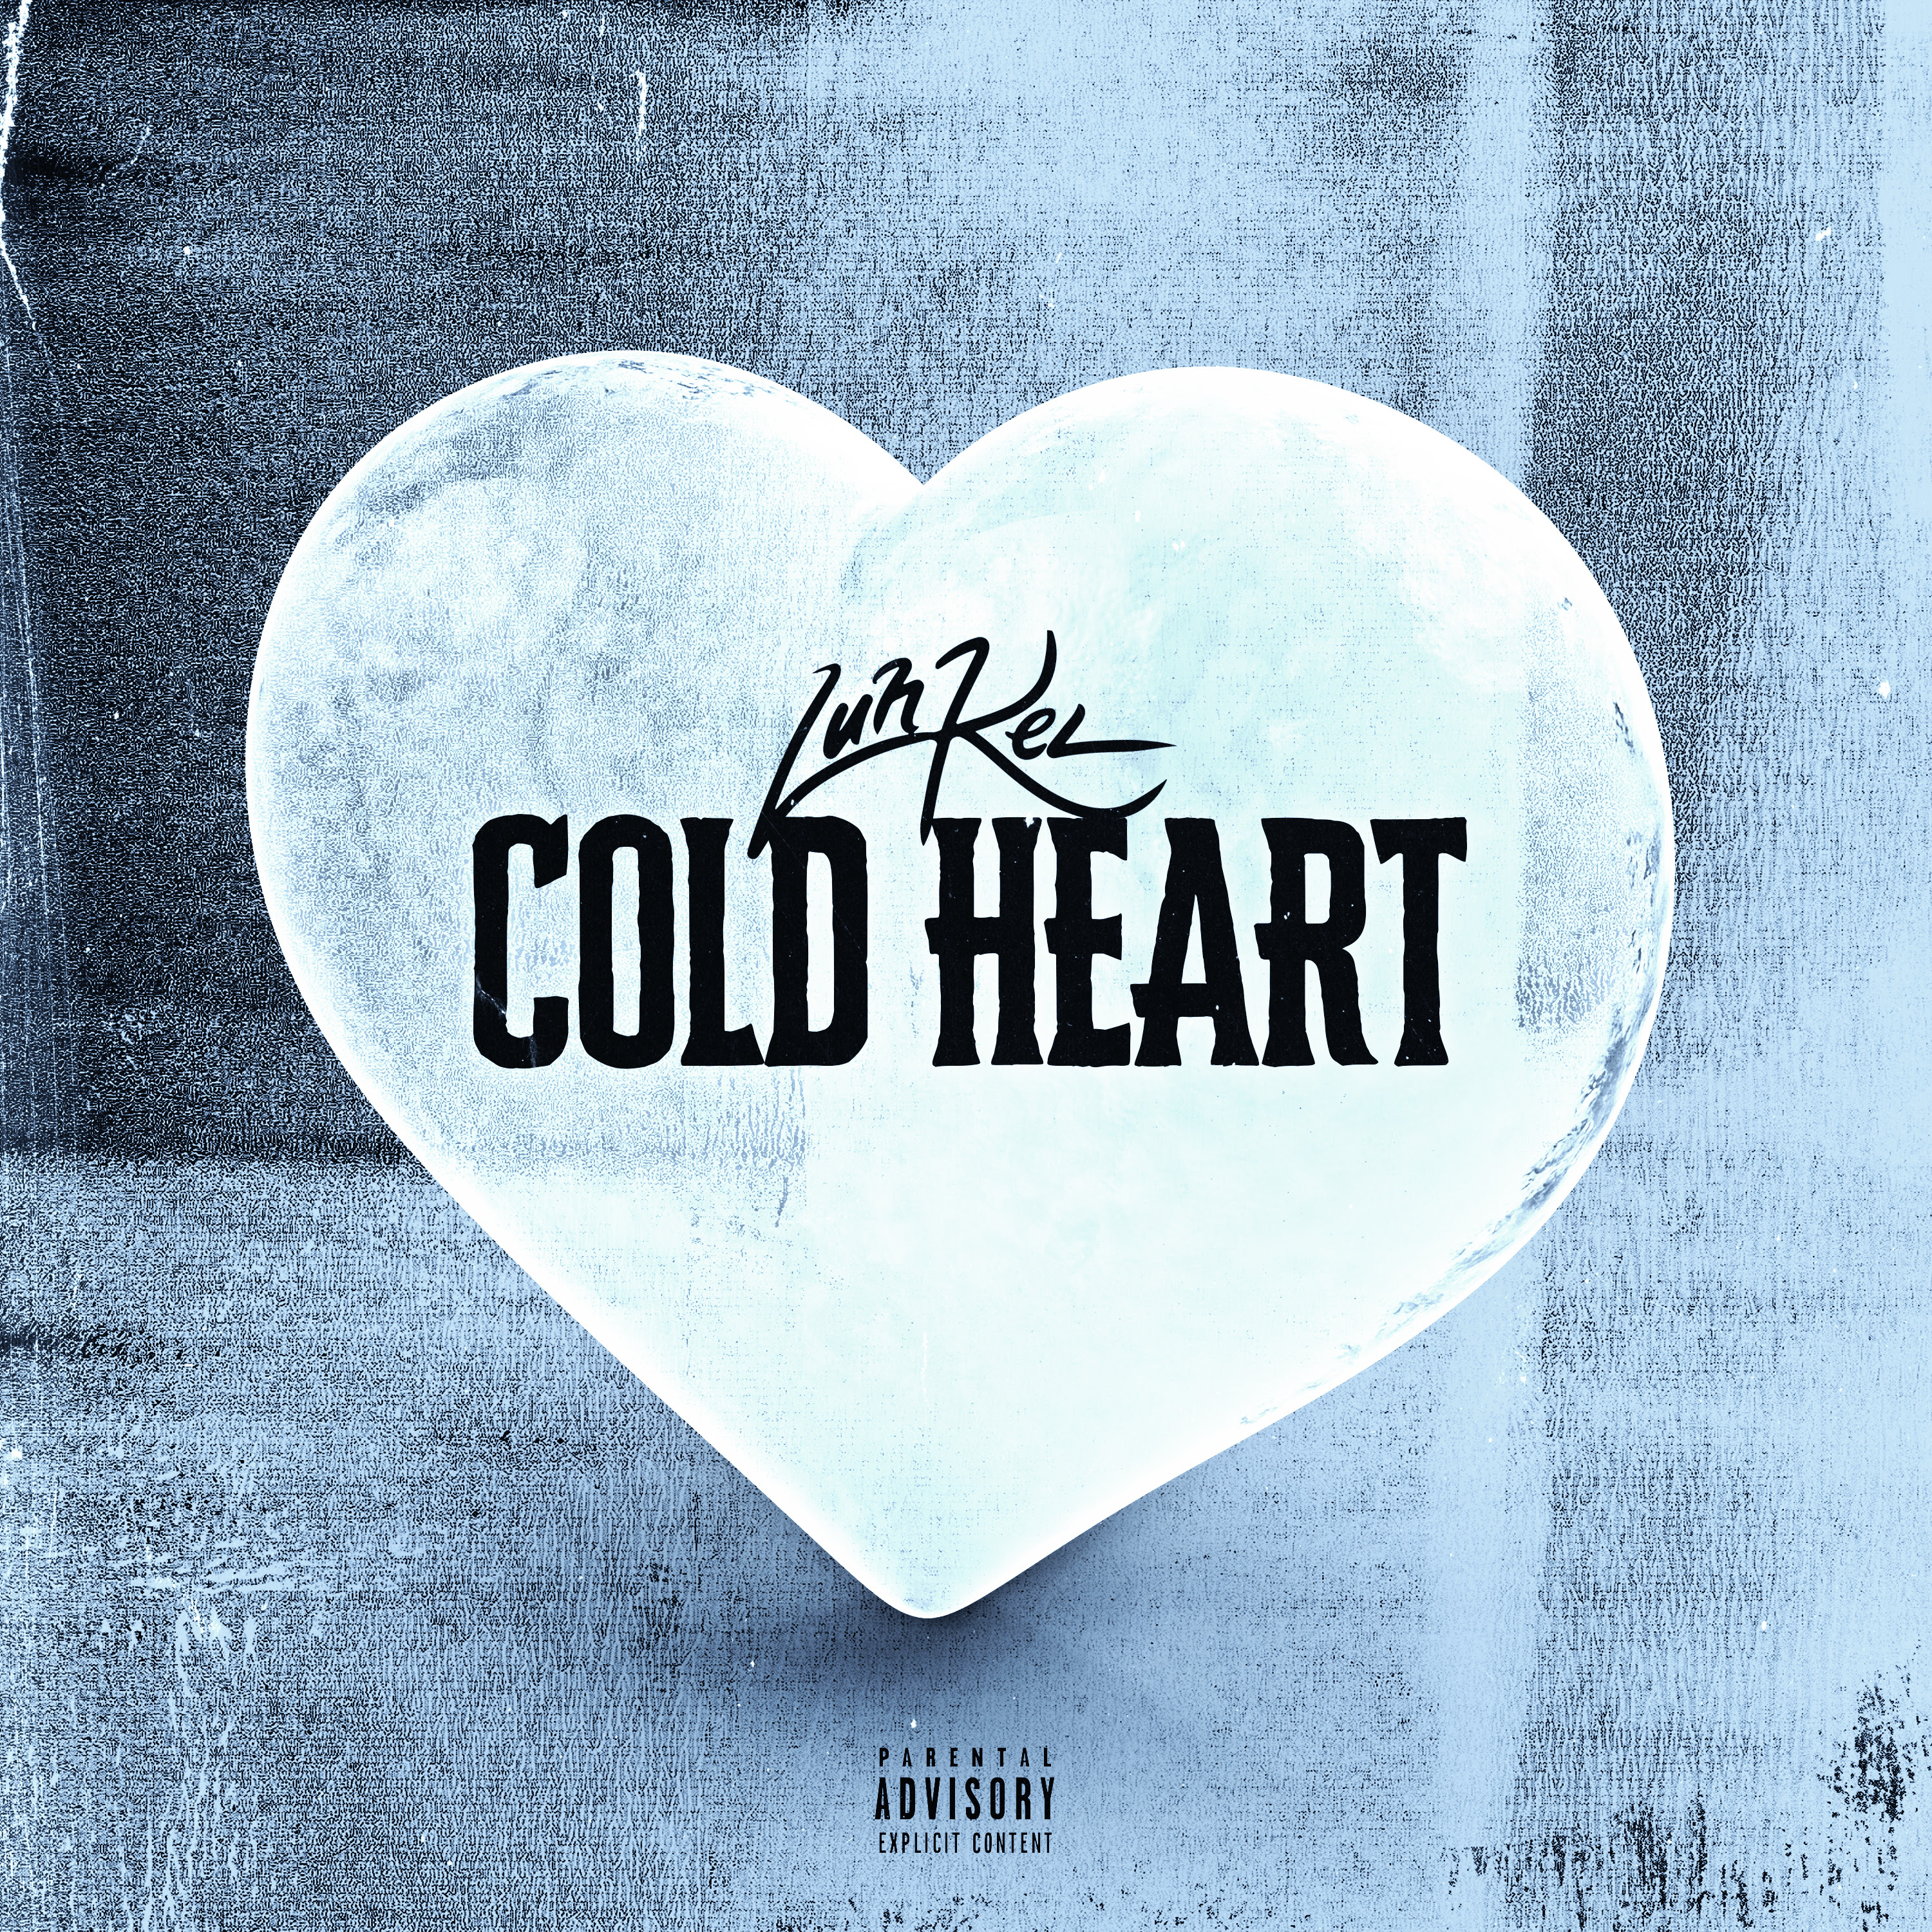 Cold hear. Cold Heart. Heart обложка. Обложка трека Cold Heart. Cold Heart ник Литтлмор.